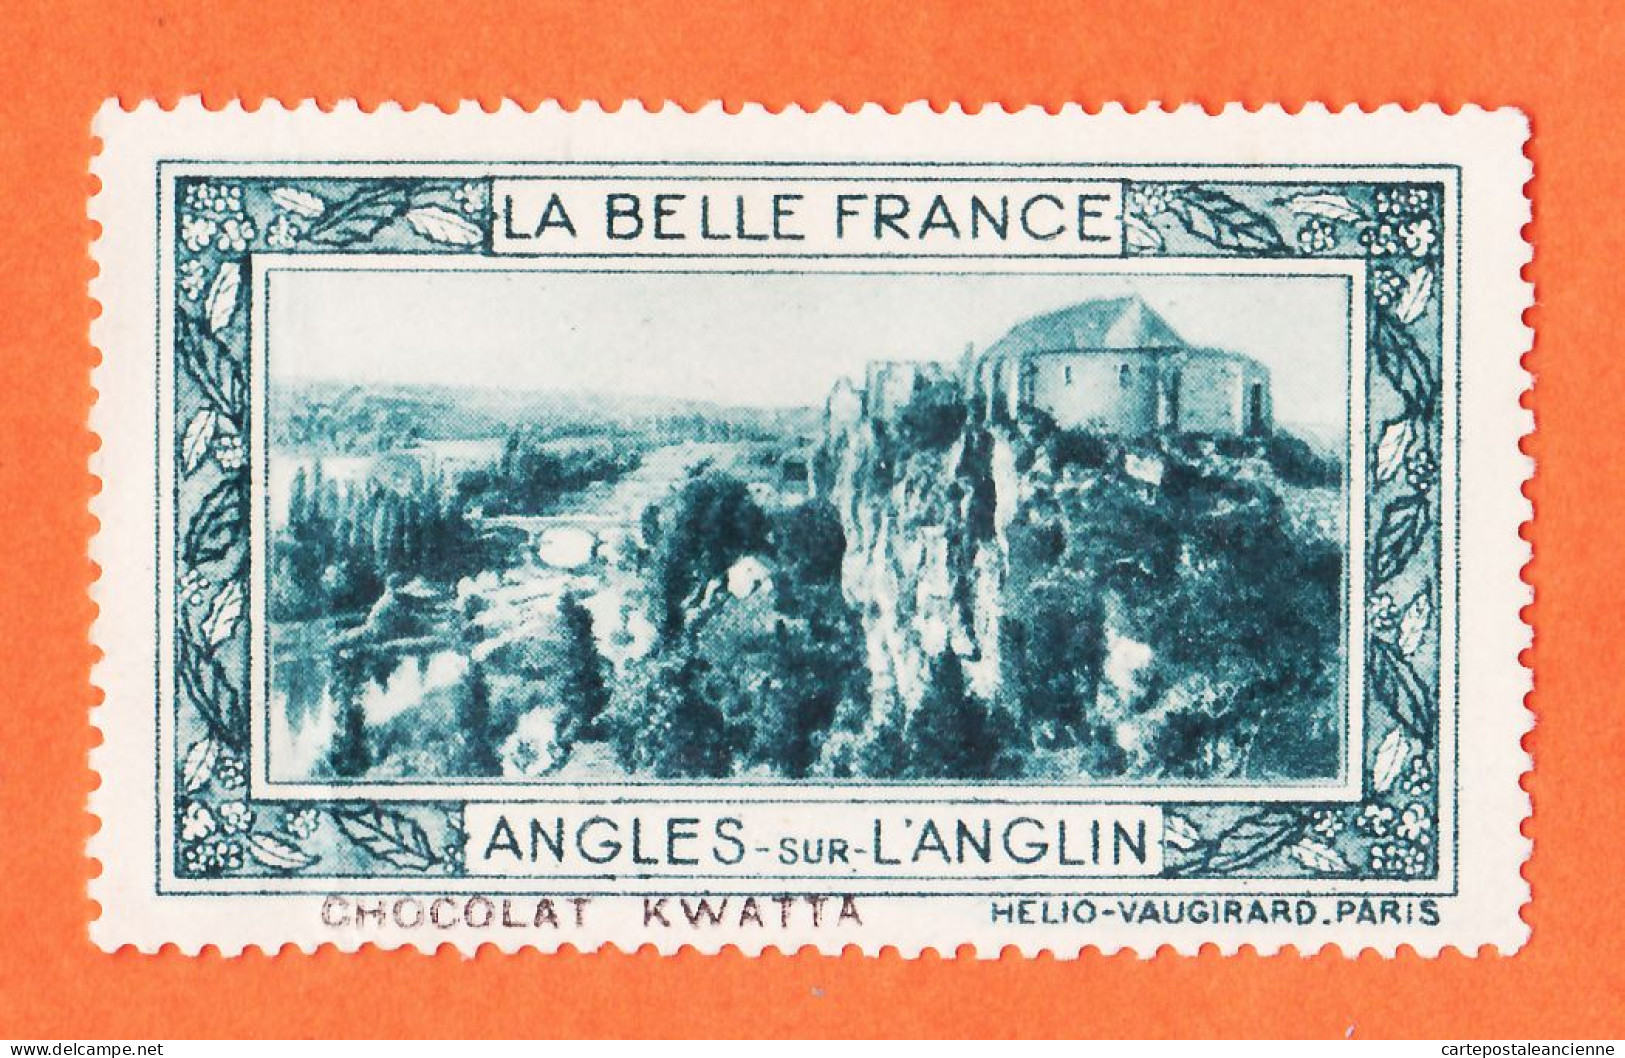 36976 / ⭐ ◉ LANGLES-sur-L'ANGLIN 86-Yonne Pub Chocolat KWATTA Vignette Collection BELLE FRANCE HELIO-VAUGIRARD - Tourismus (Vignetten)